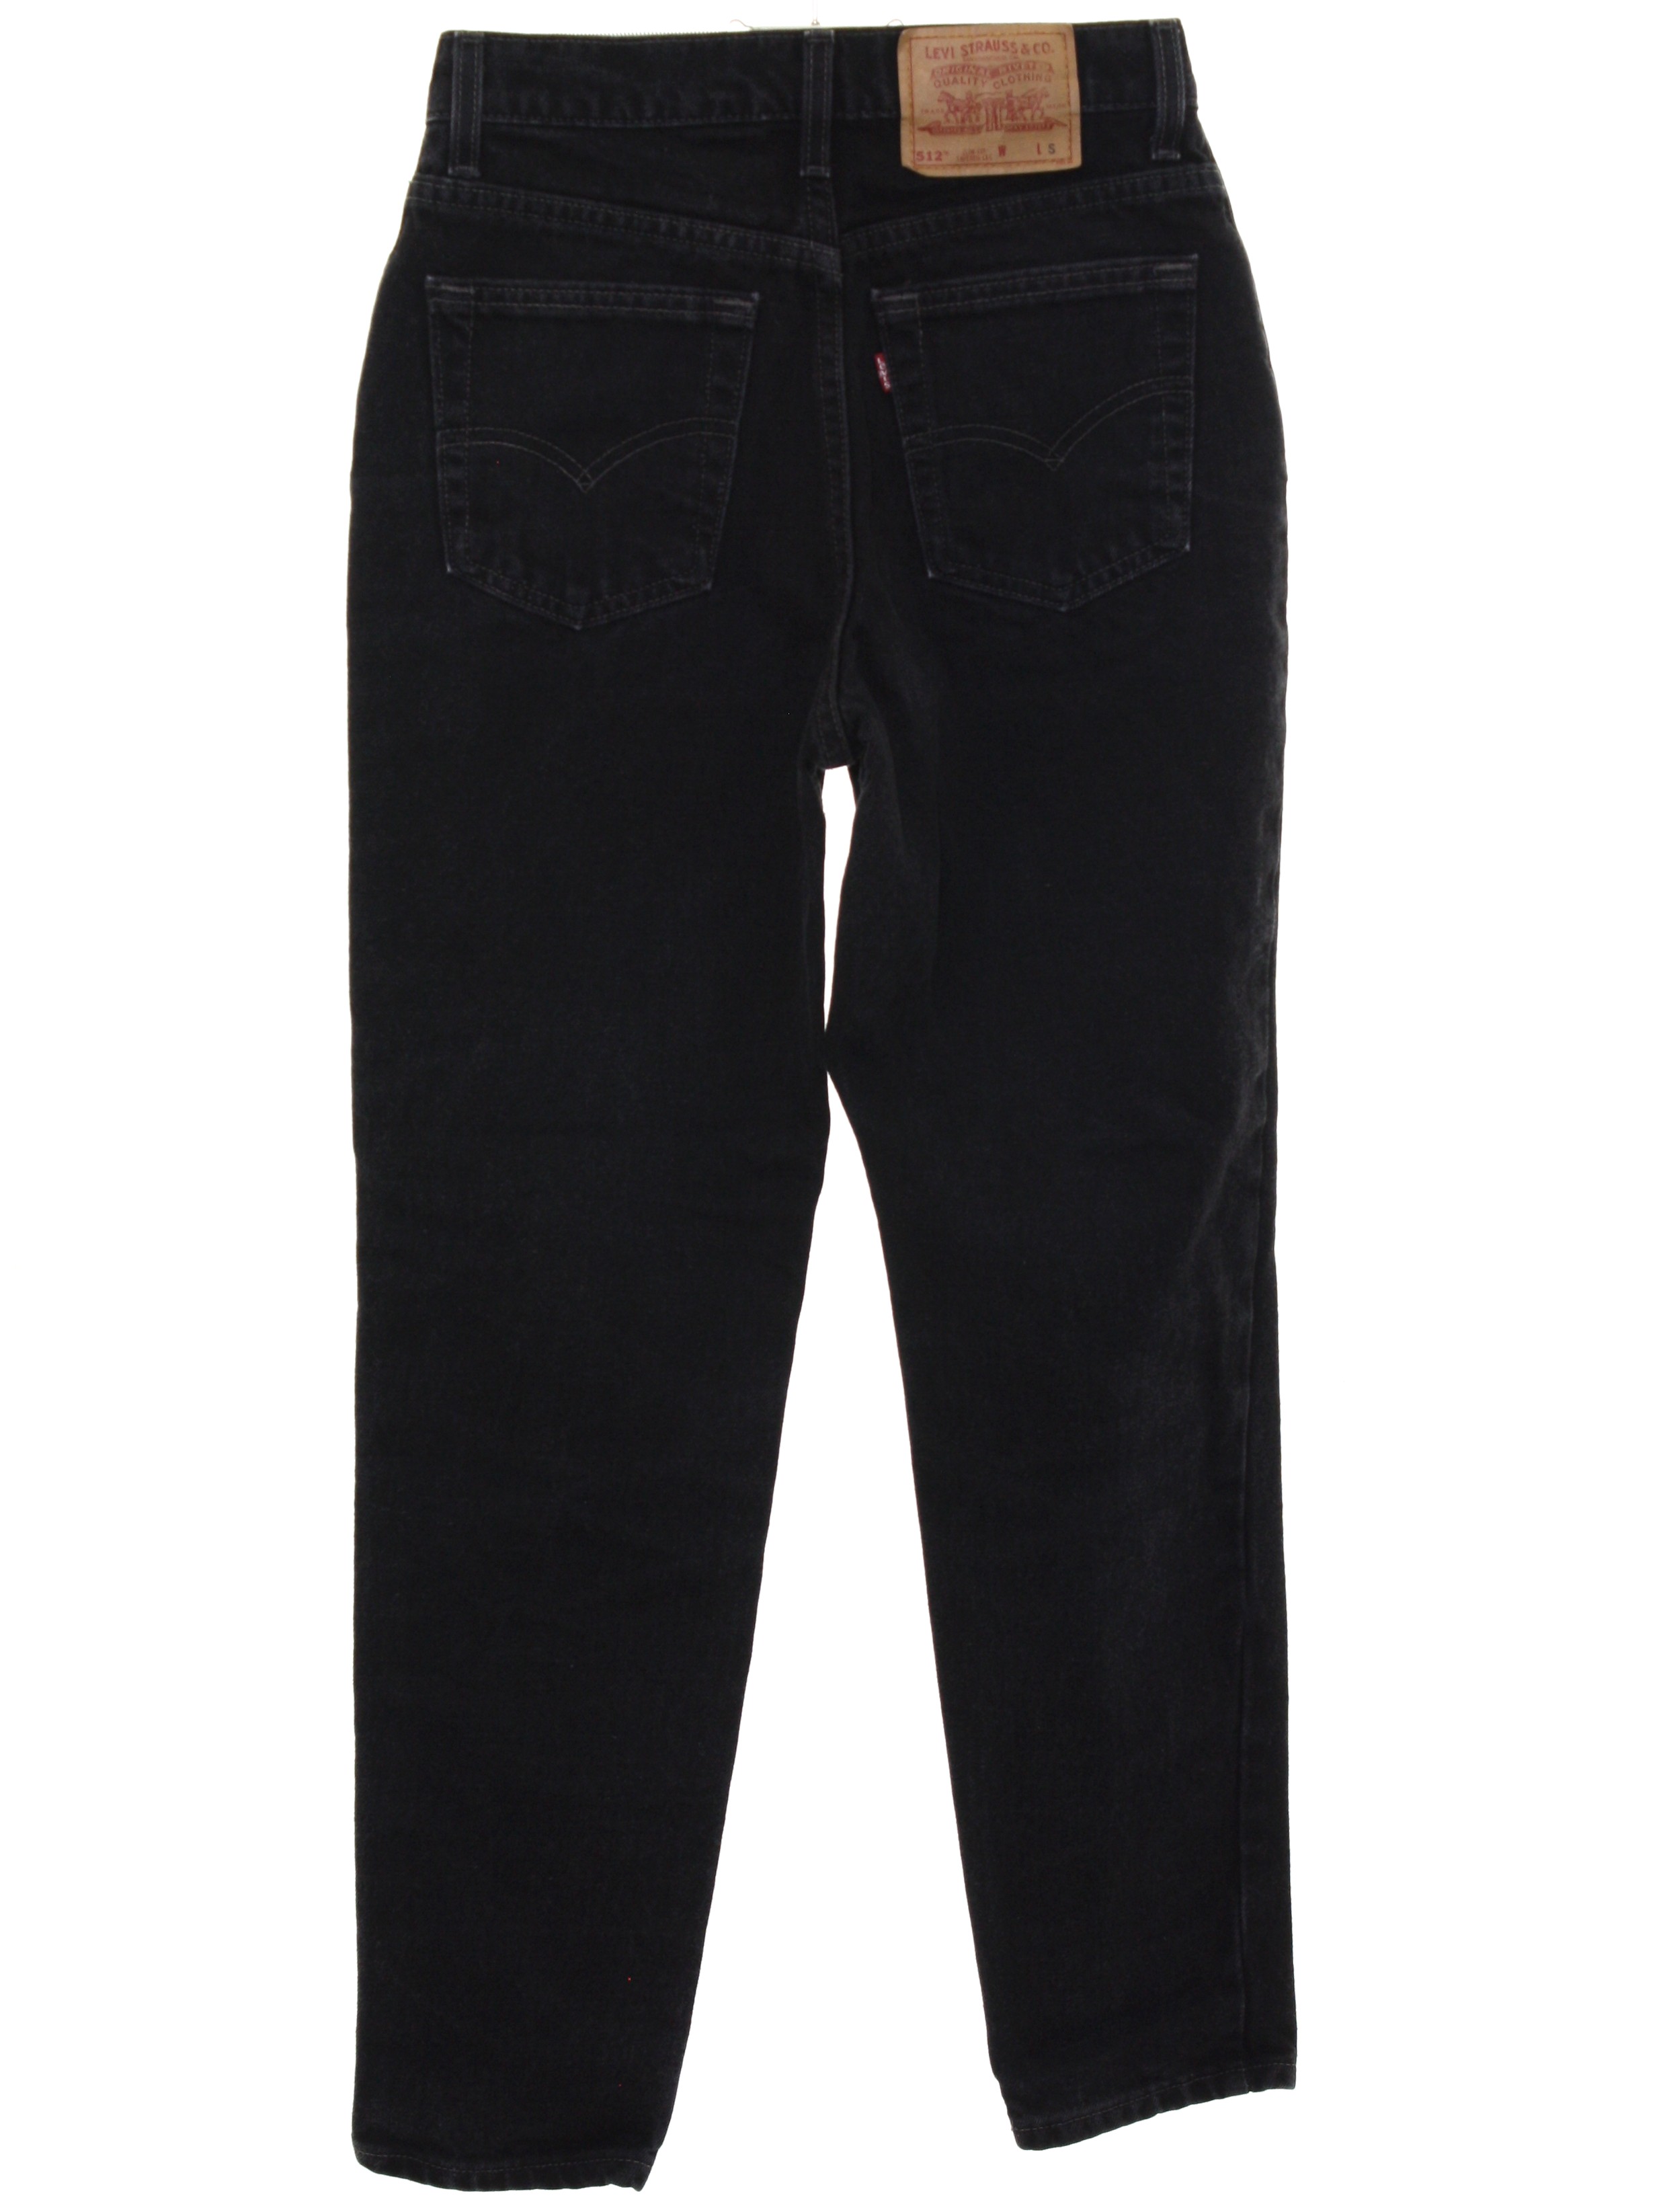 90's Vintage Pants: 90s -Levis 512- Womens as-new black cotton denim ...